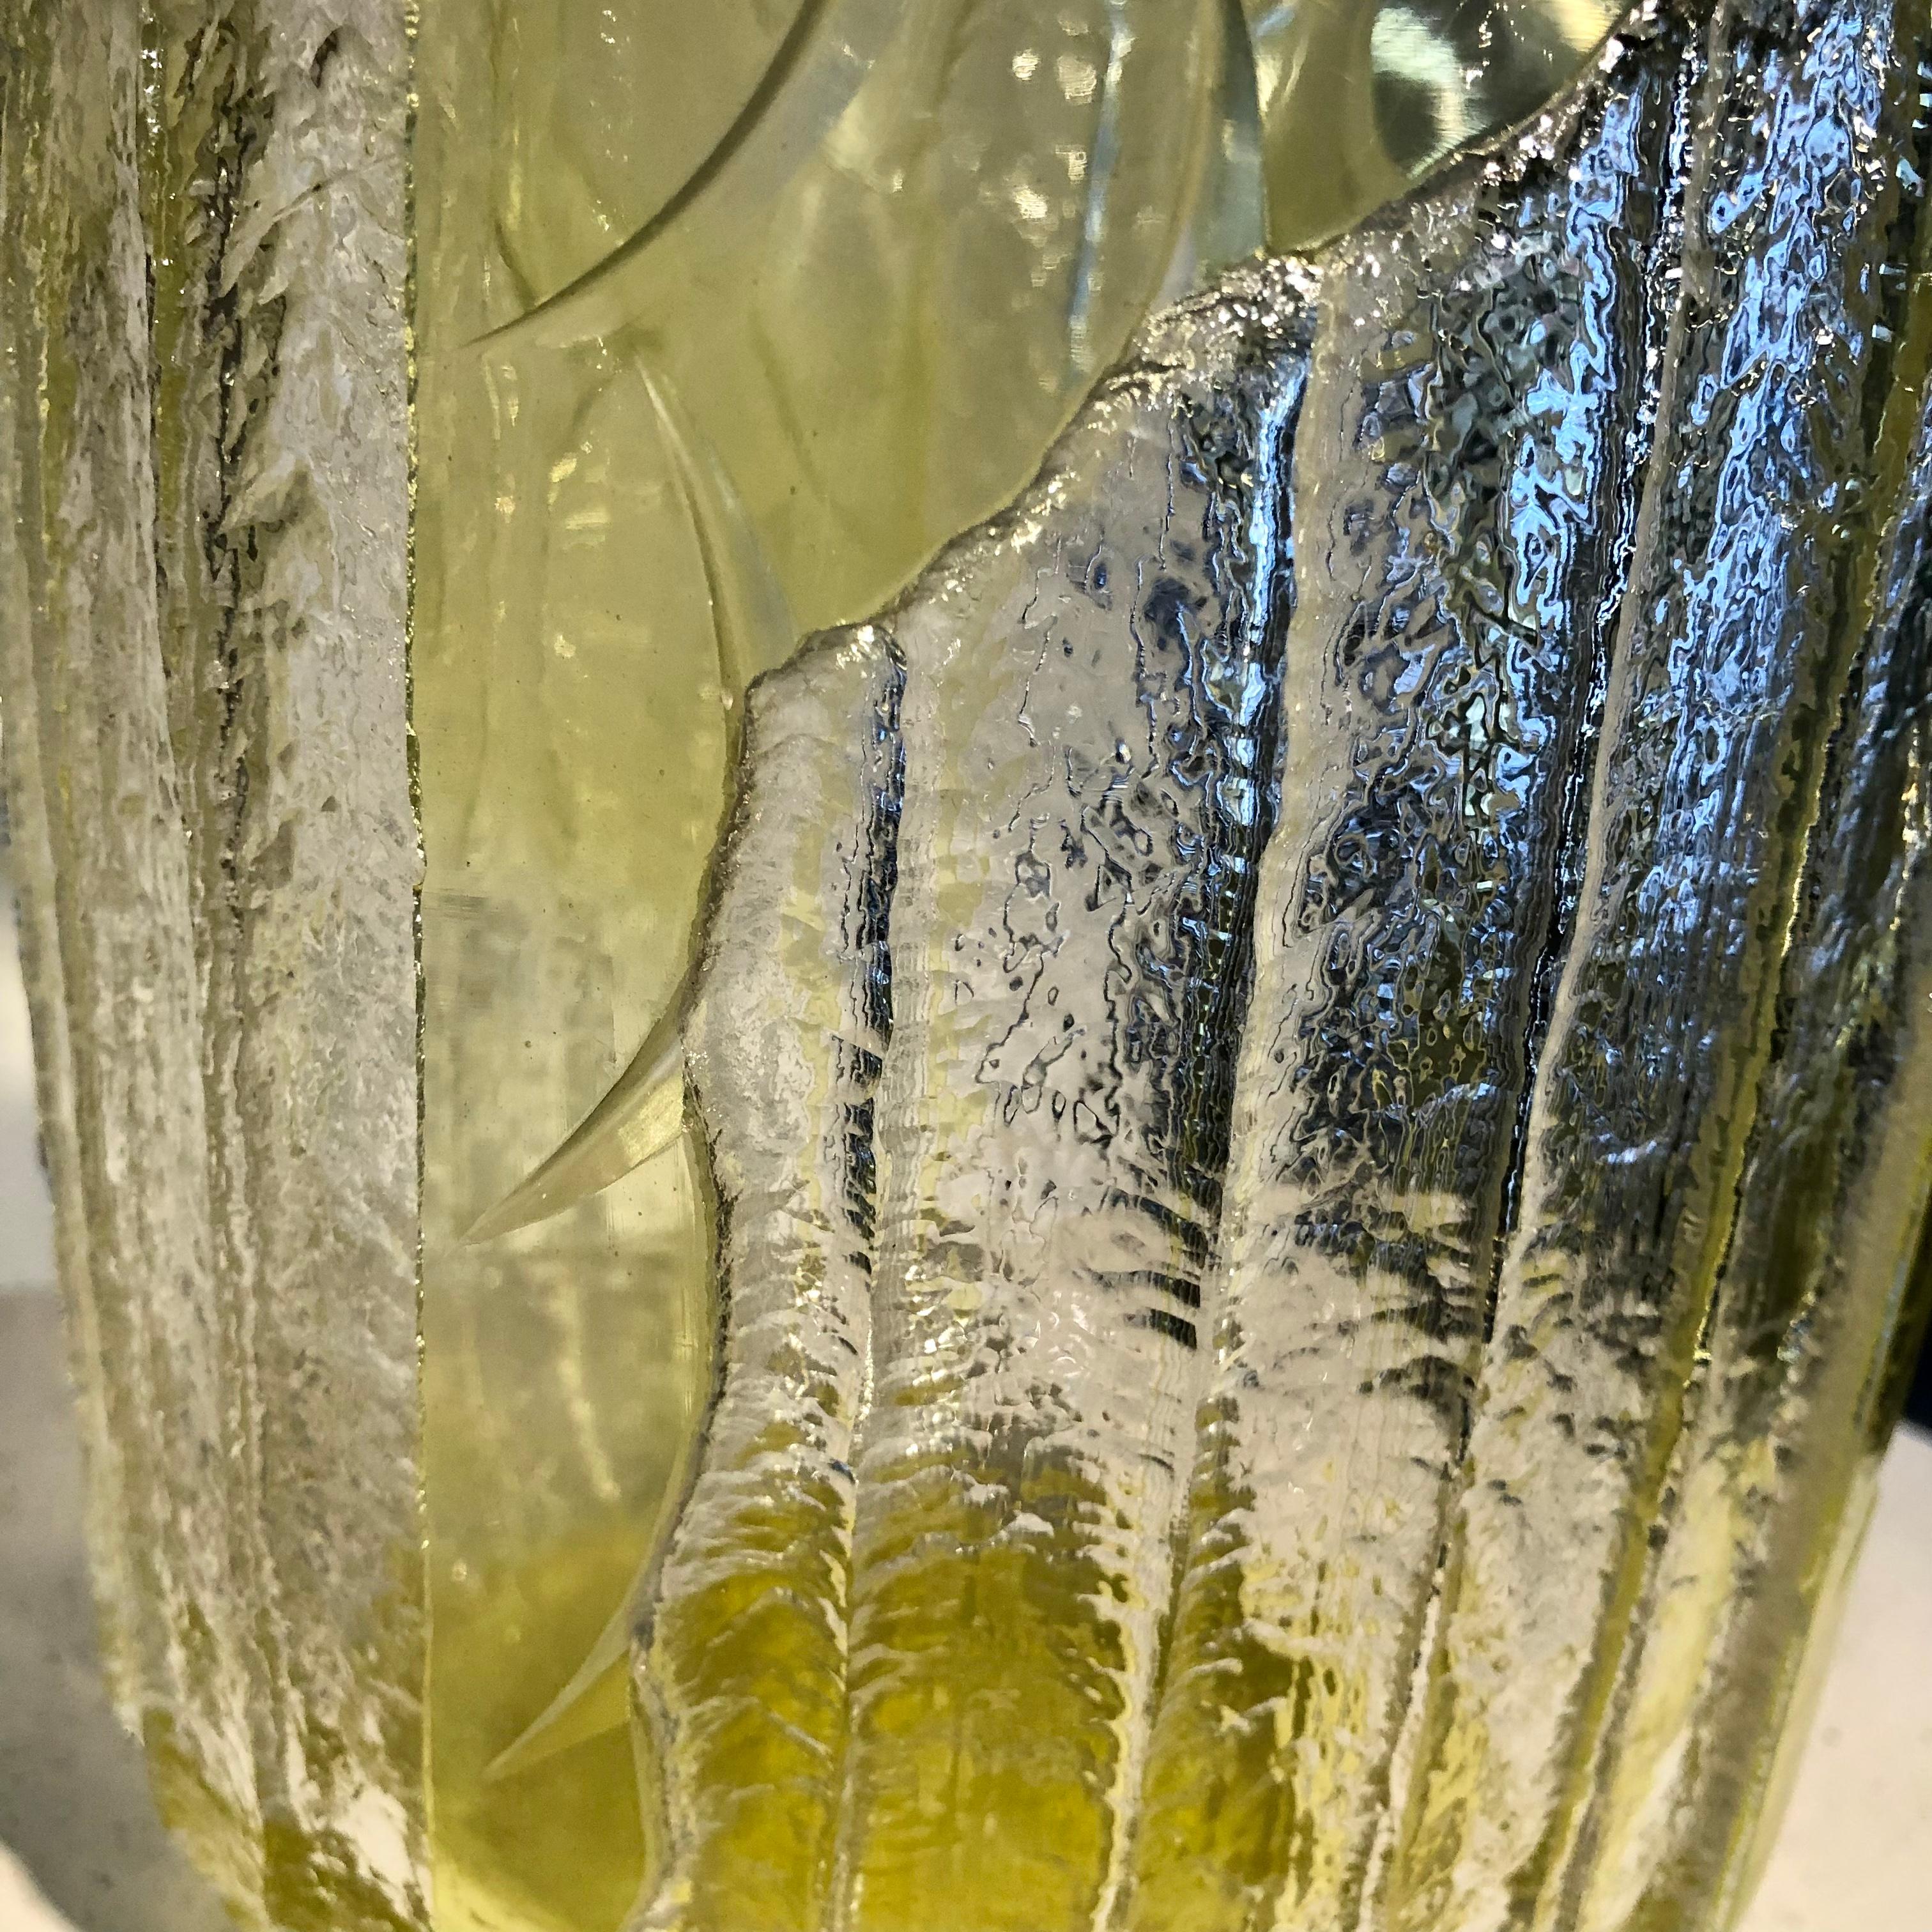 Très impressionnant verre gravé à l'acide par Schneider dans une étonnante couleur jaune.
Gravure très profonde sur la surface du vase avec un design Art Déco pur.
Véritablement l'un des meilleurs vases de cette période Art Déco du fabricant.
La